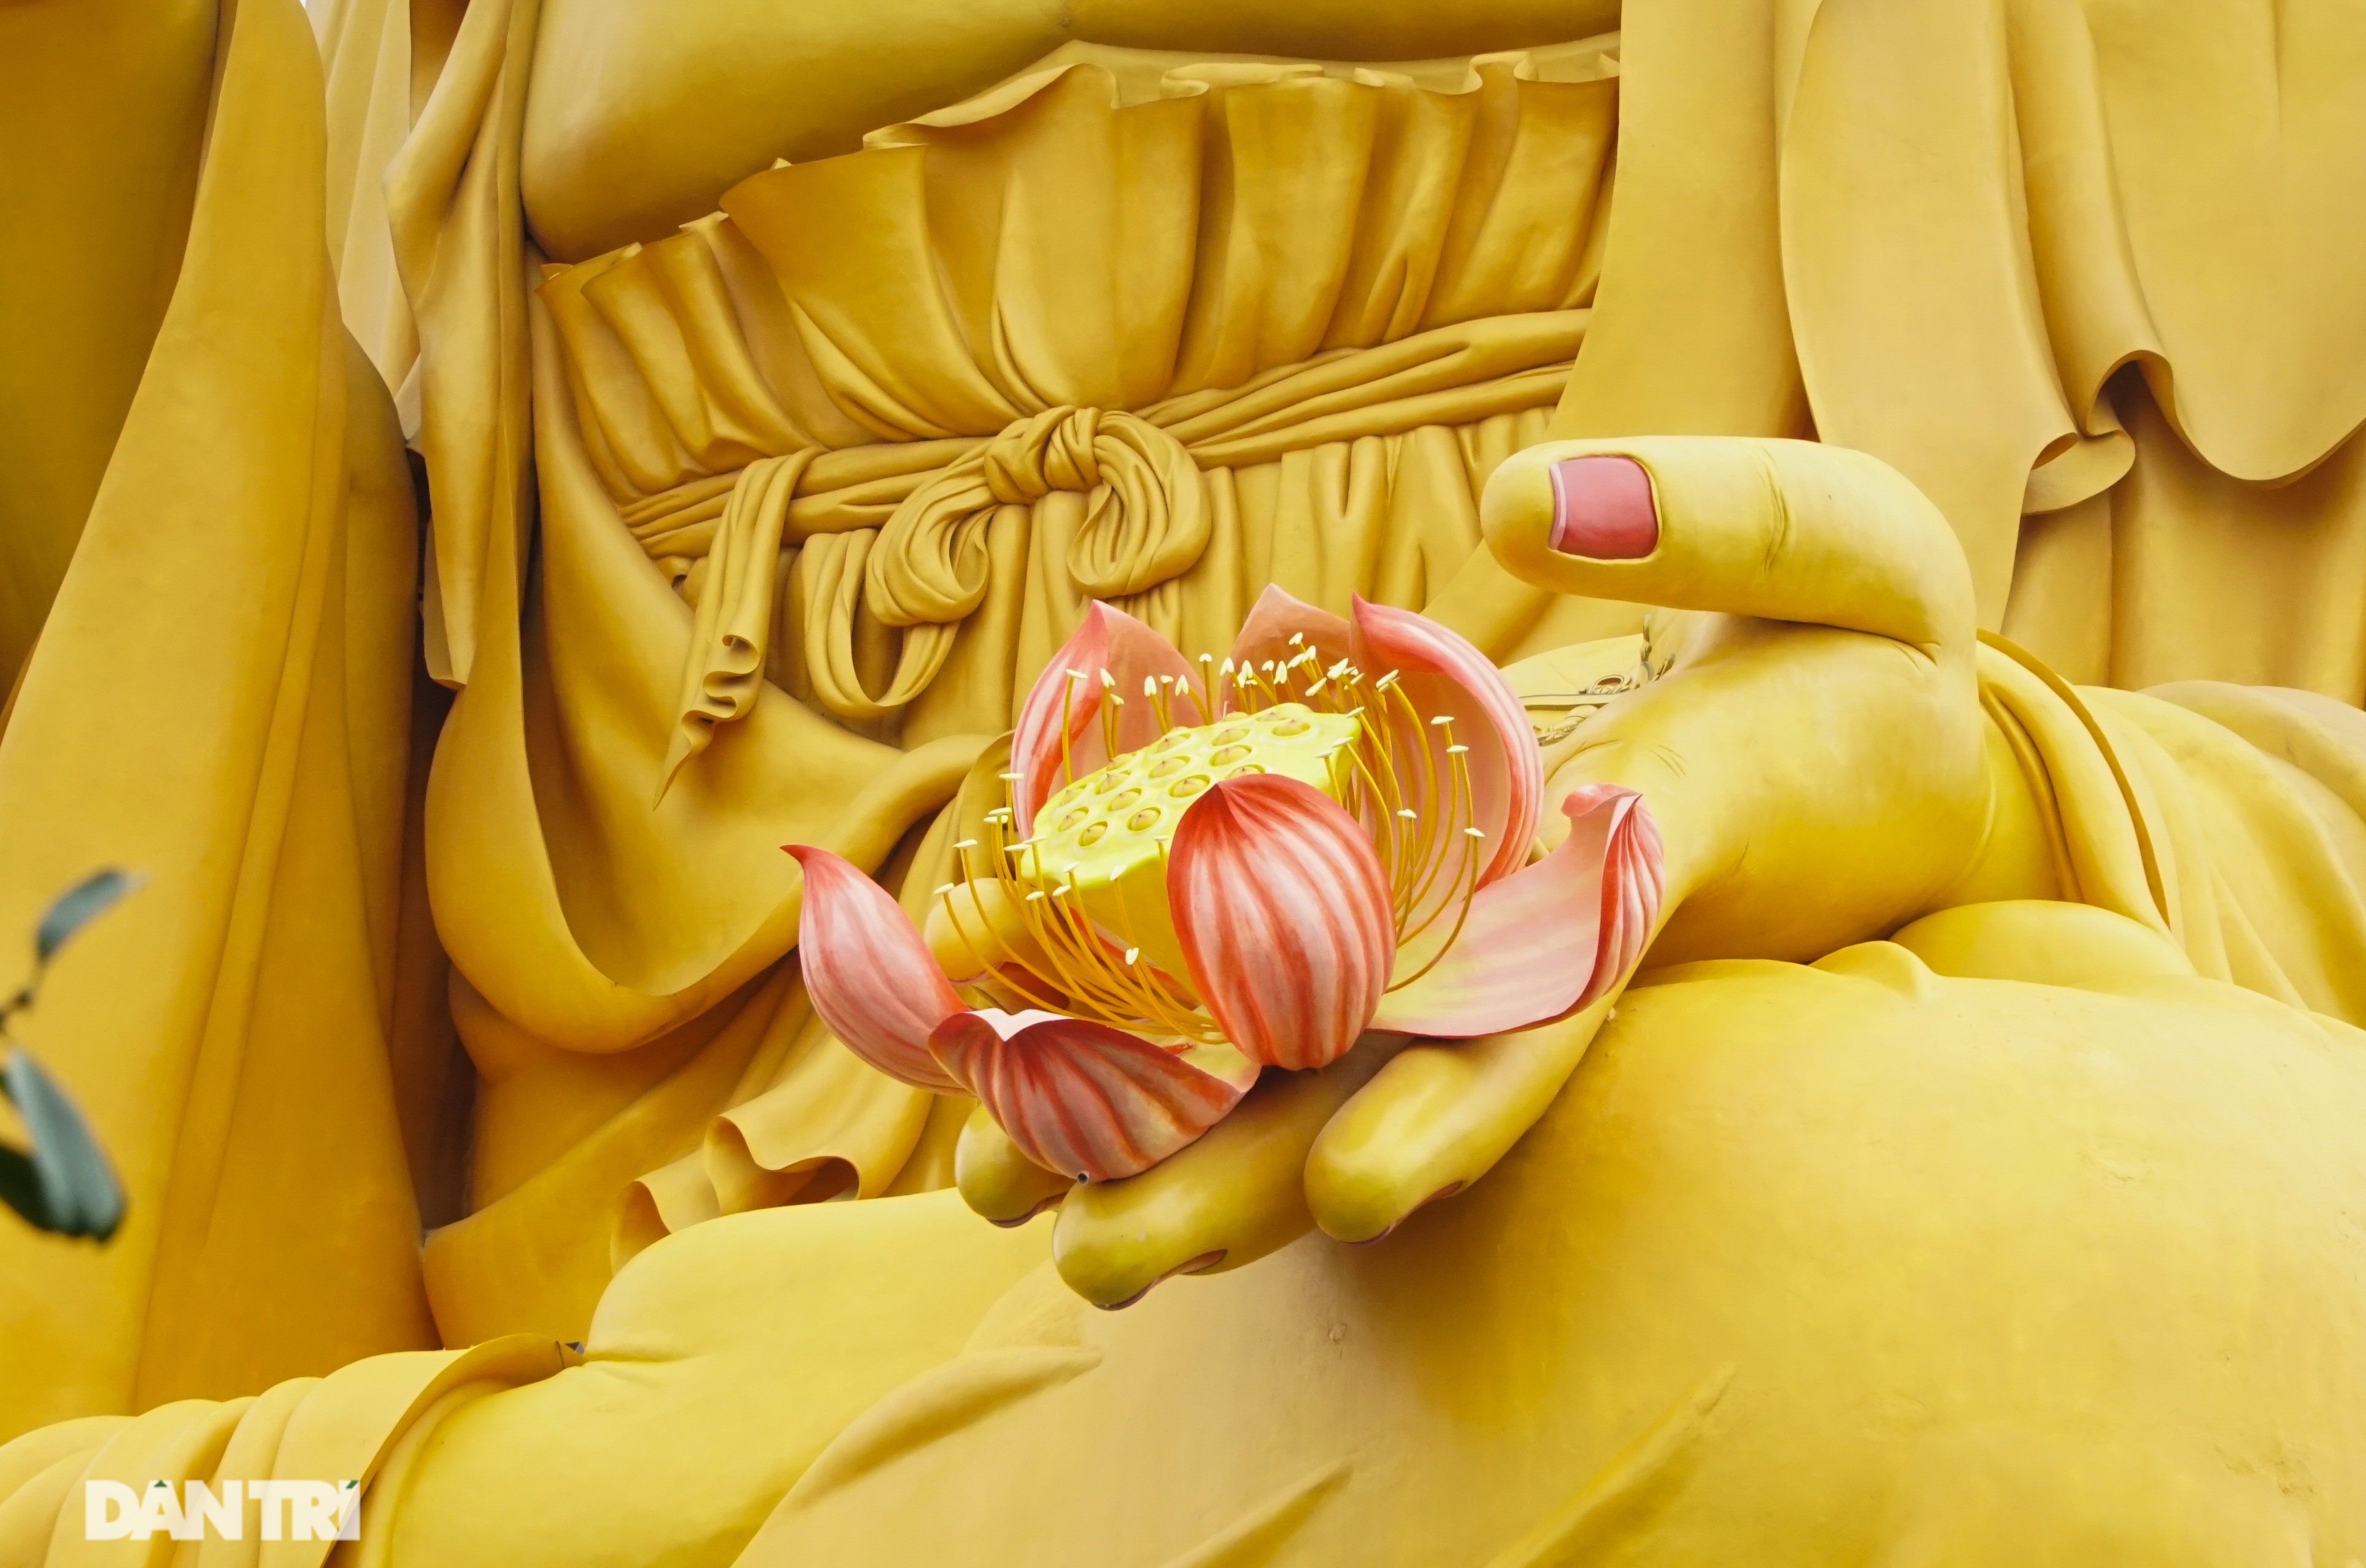  Đóa sen trên bàn tay trái của Đức Phật đã hoàn thành rất tinh xảo, mang giá trị thẩm mỹ cao